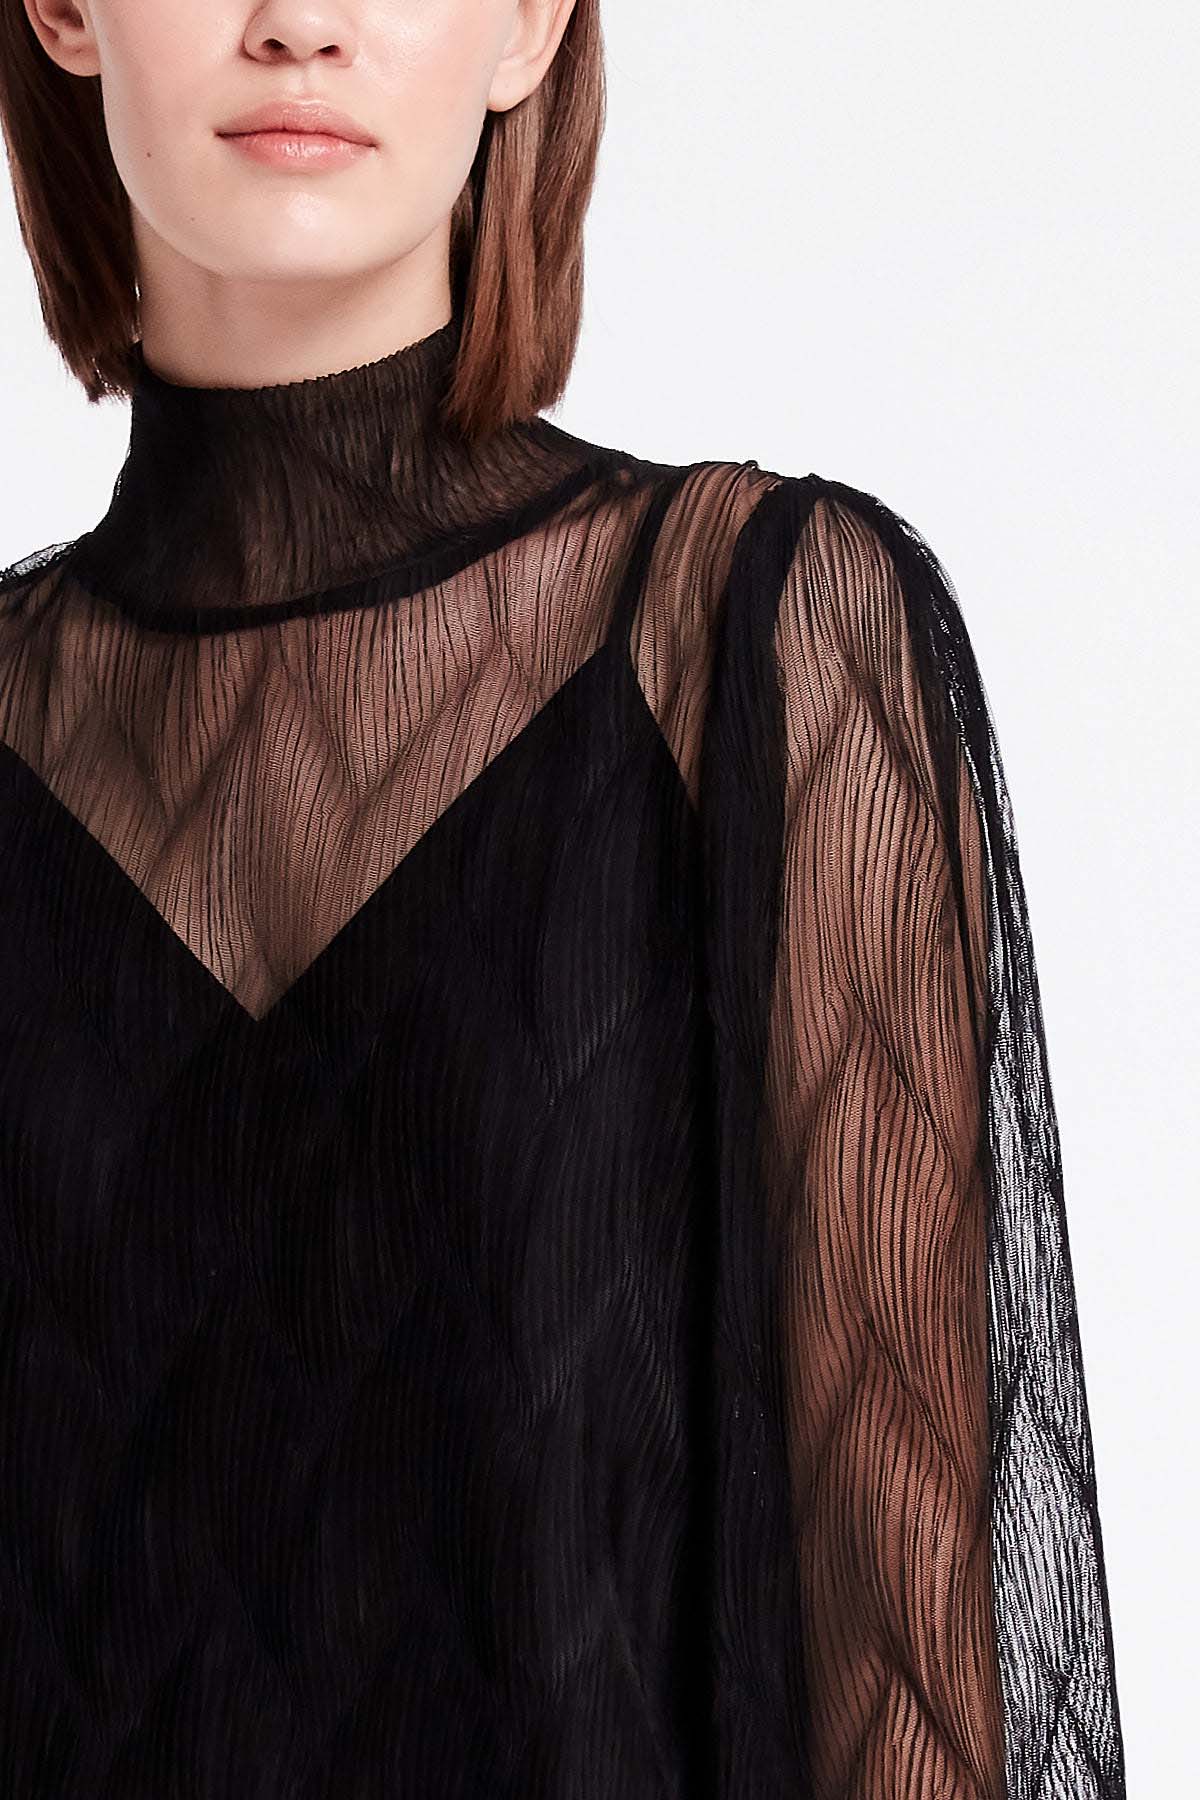 Black lace blouse, photo 2